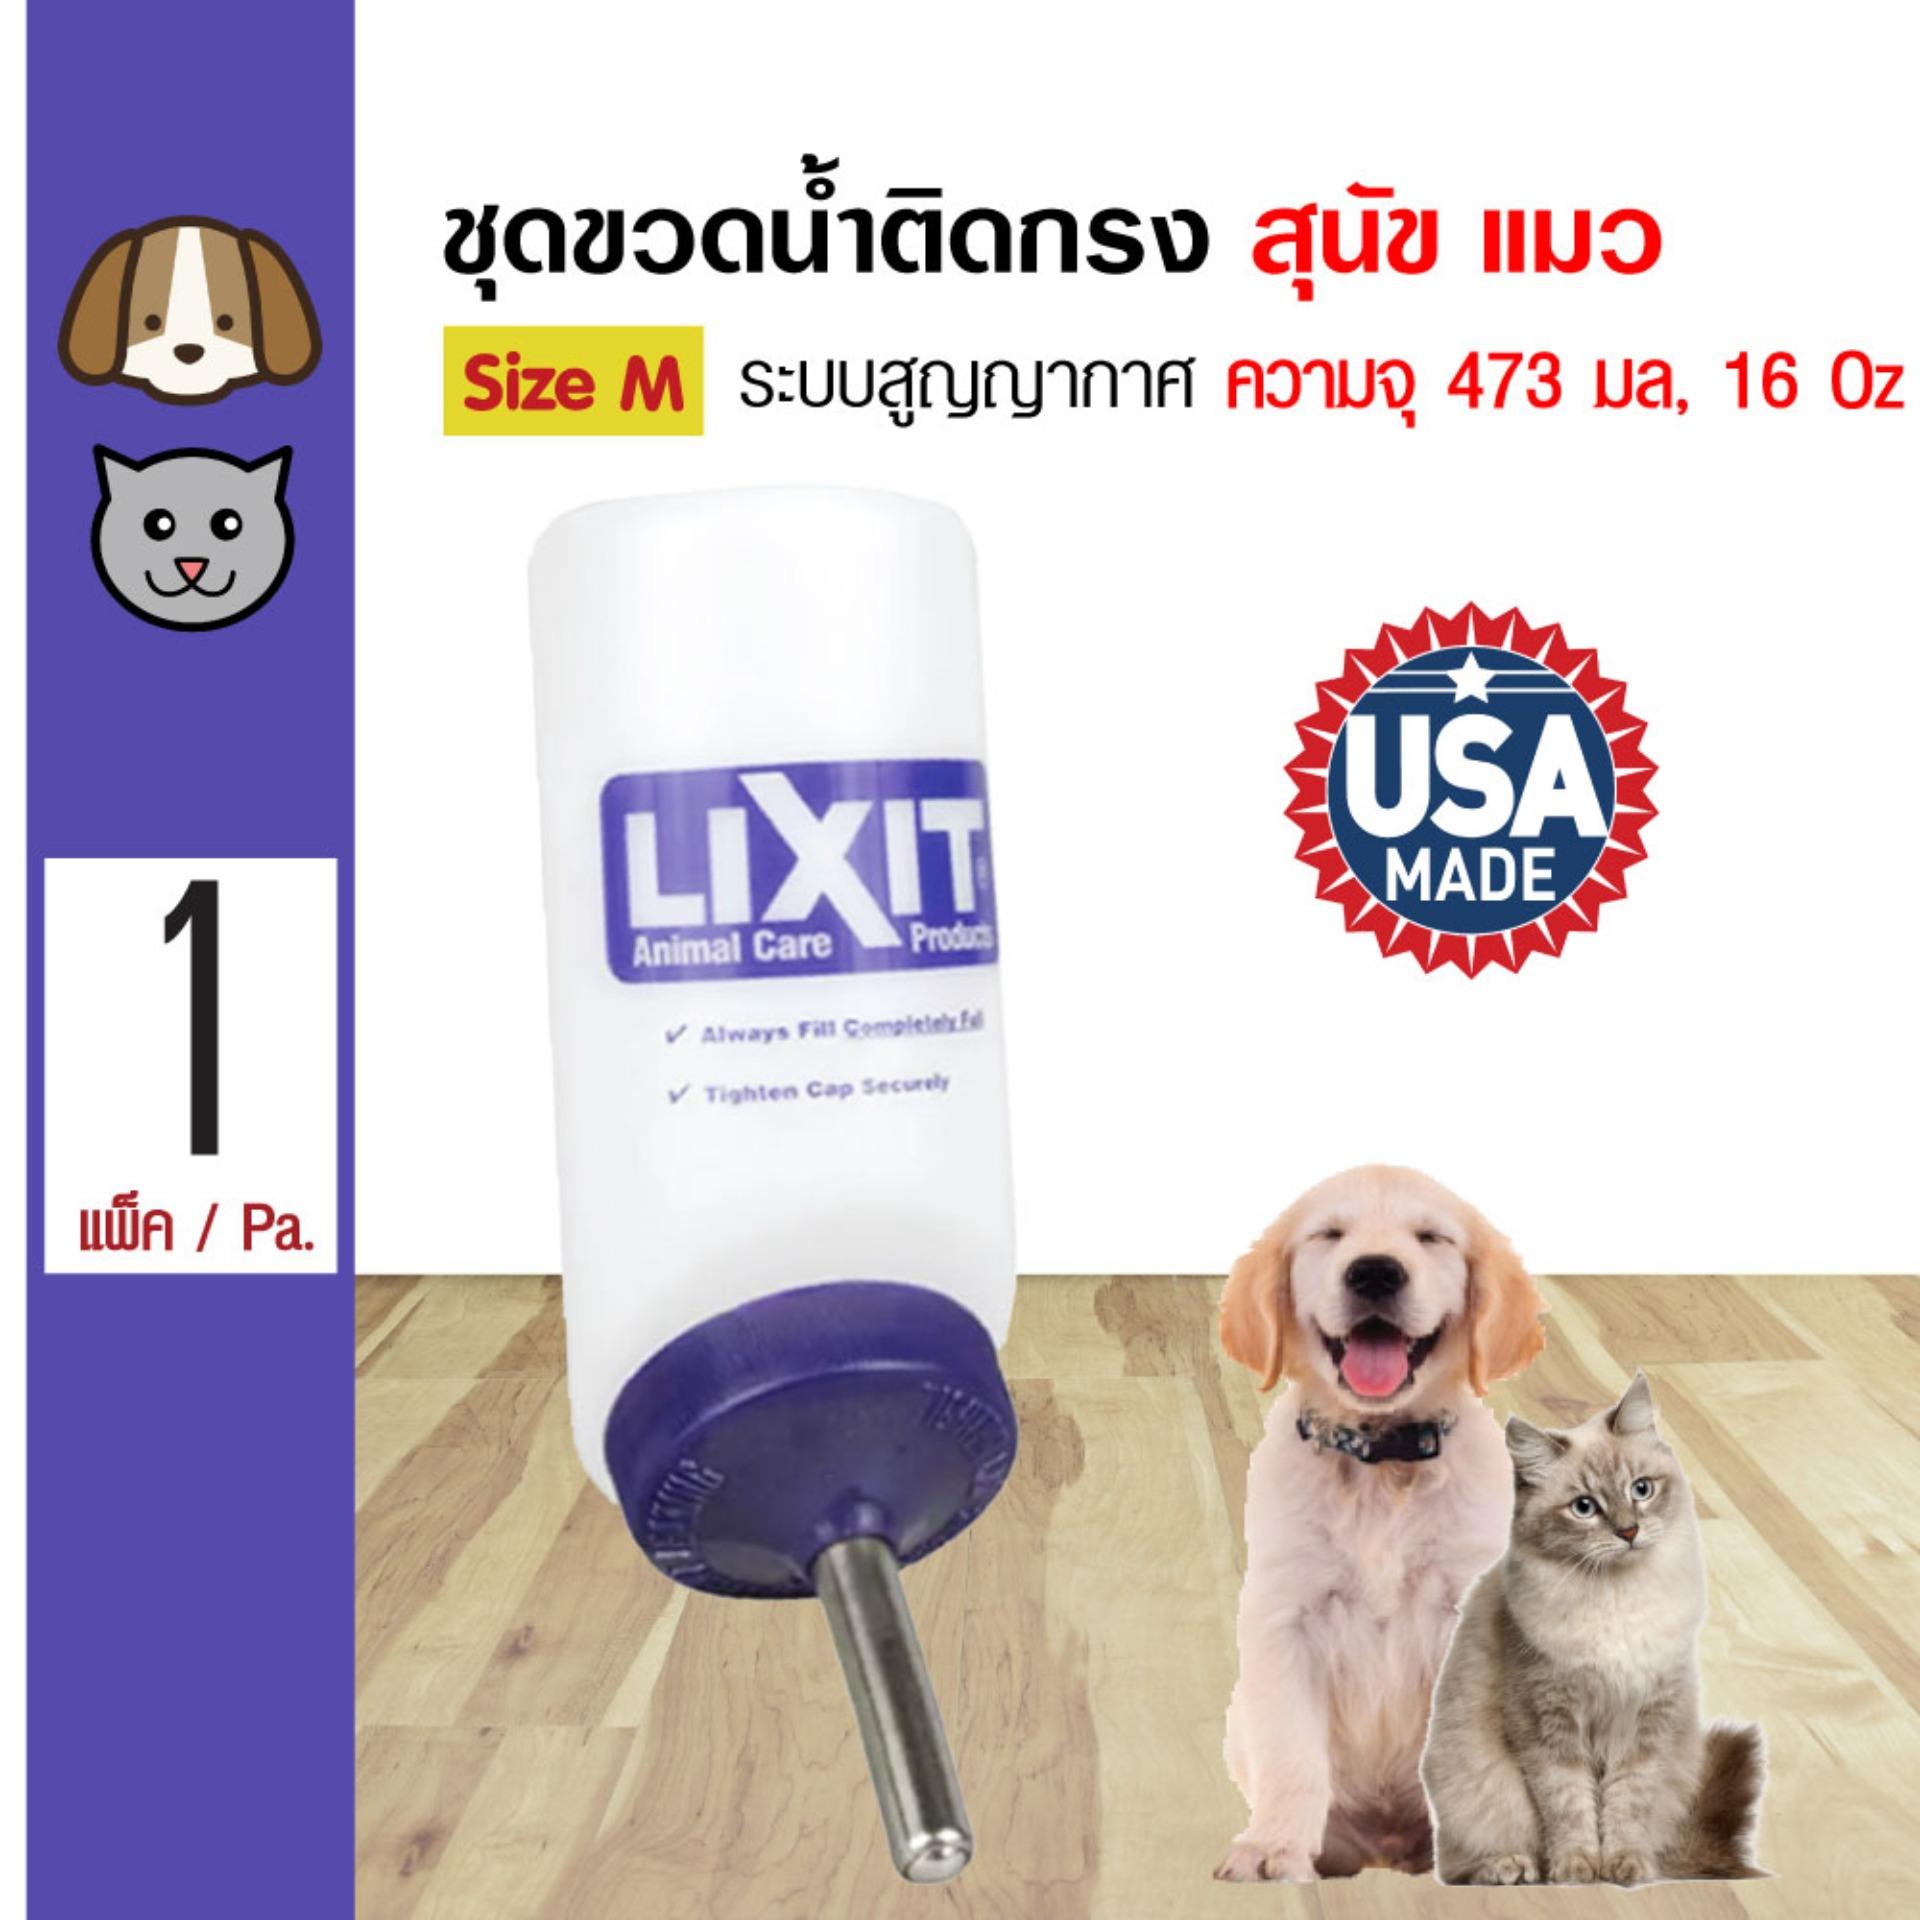 Lixit Water Bottle ชุดขวดน้ำแขวนกรง รุ่นปากกว้าง ระบบสูญญากาศ (รับประกัน 5 ปี) สำหรับสุนัขและแมว ความจุ 473 มล. (16 Oz.)